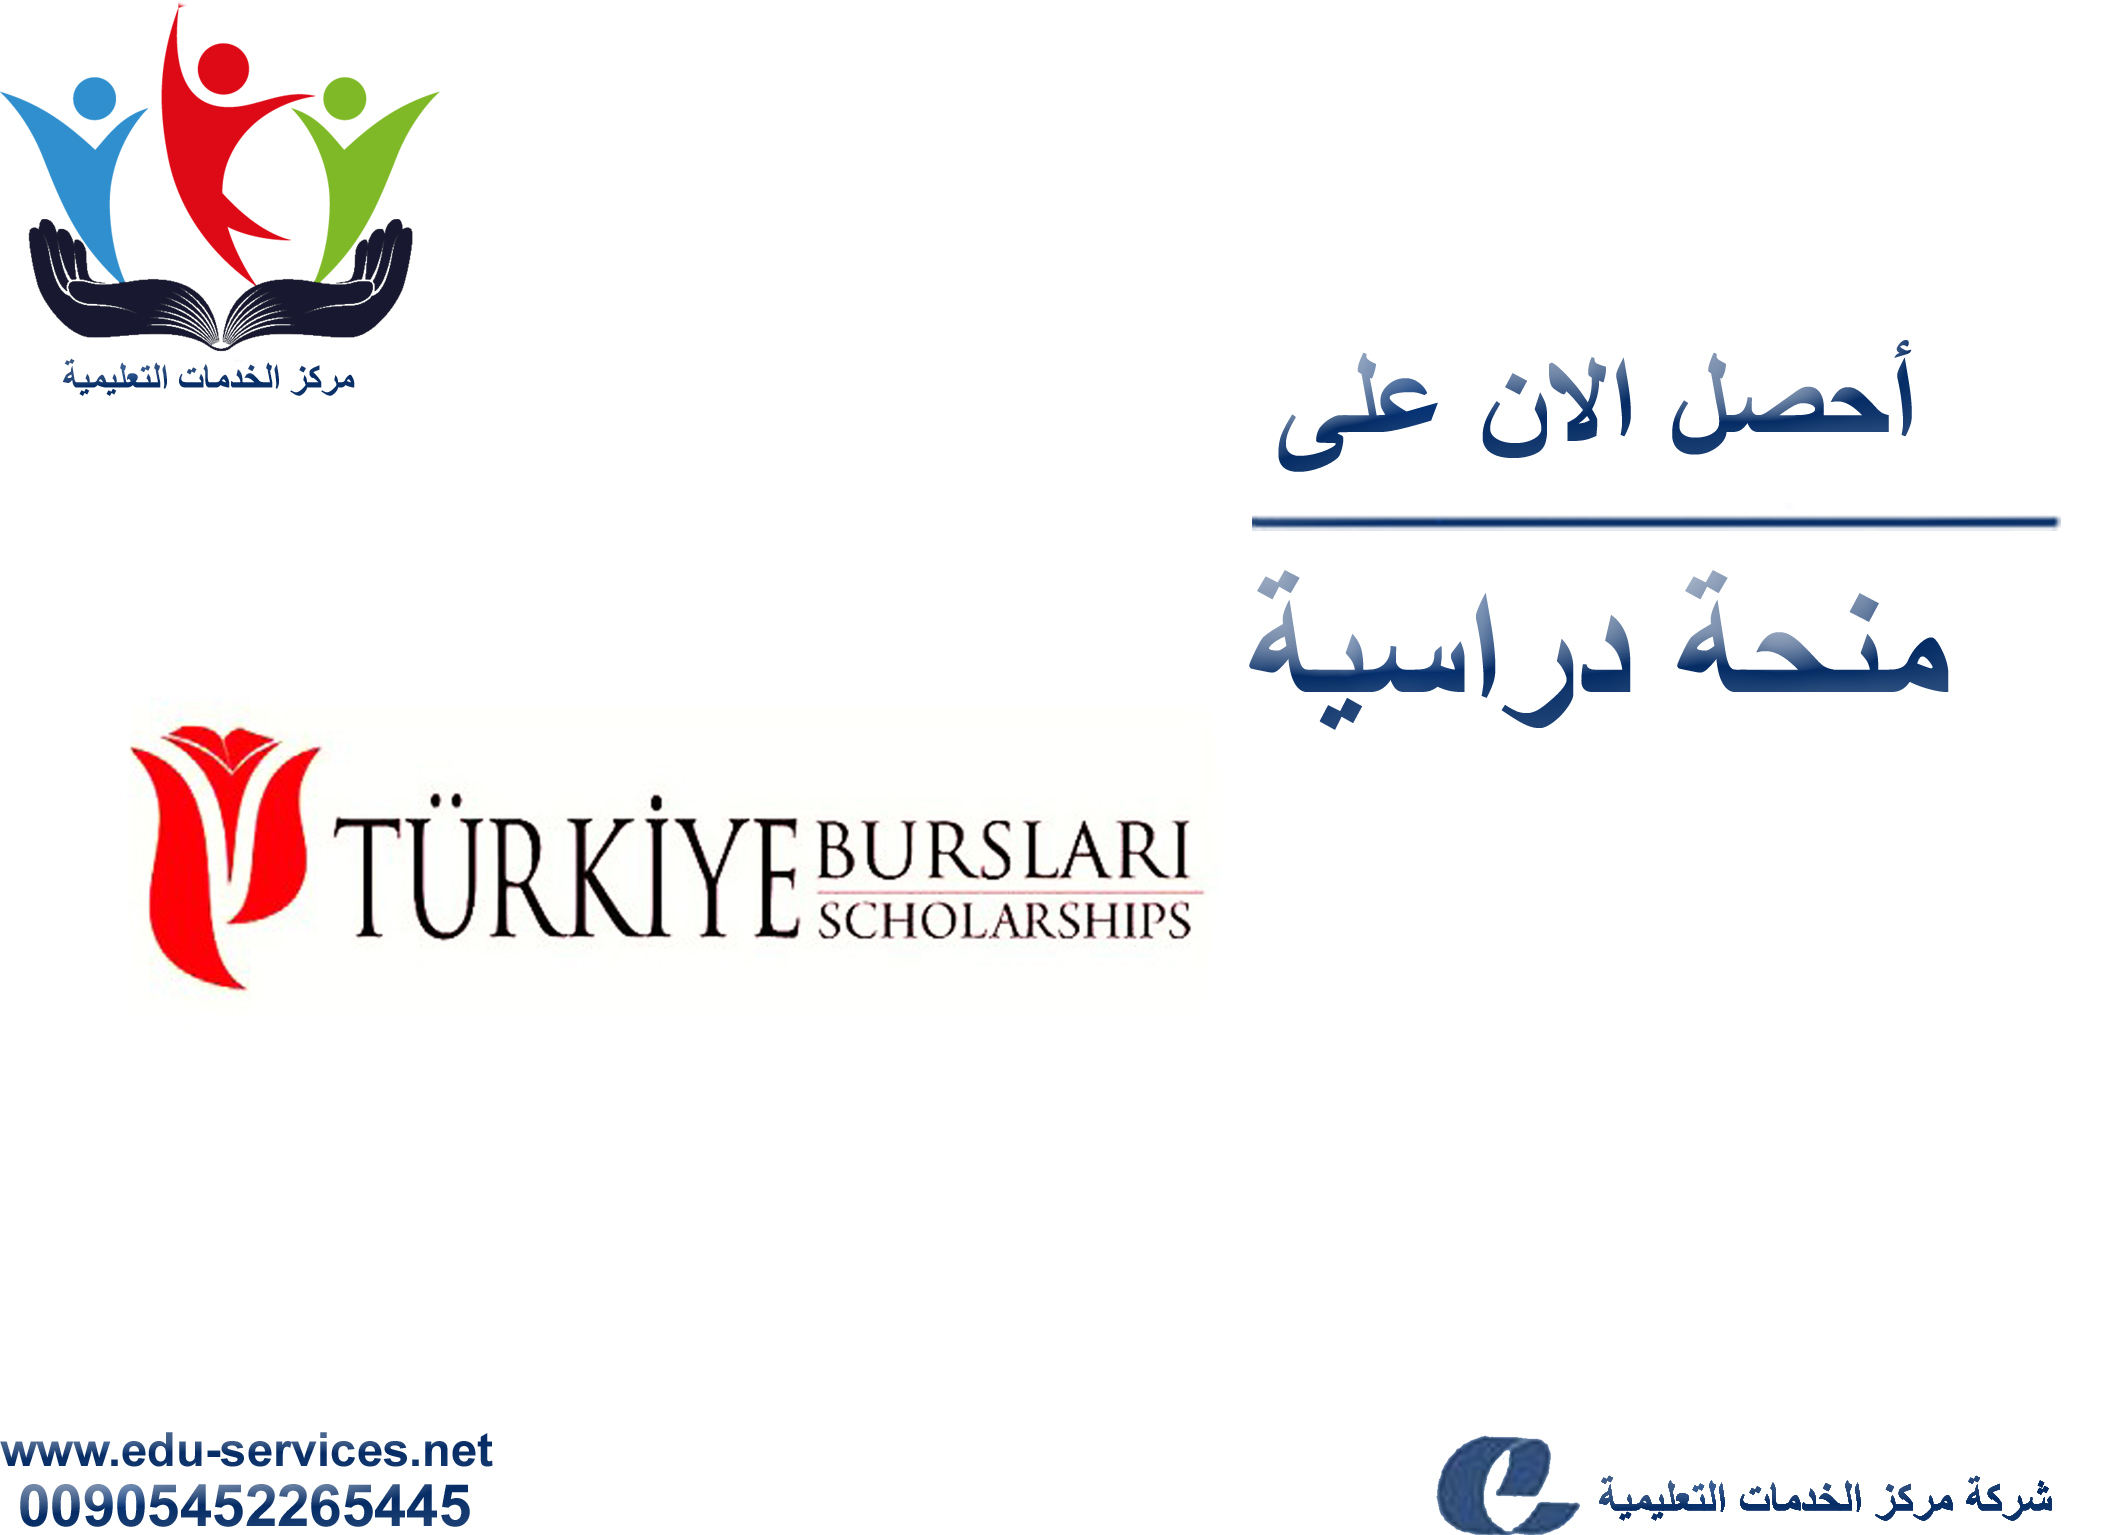 افتتاح منحة النجاح للطلبة الأجانب في الجامعات التركية الحكومية للعام2017-2018